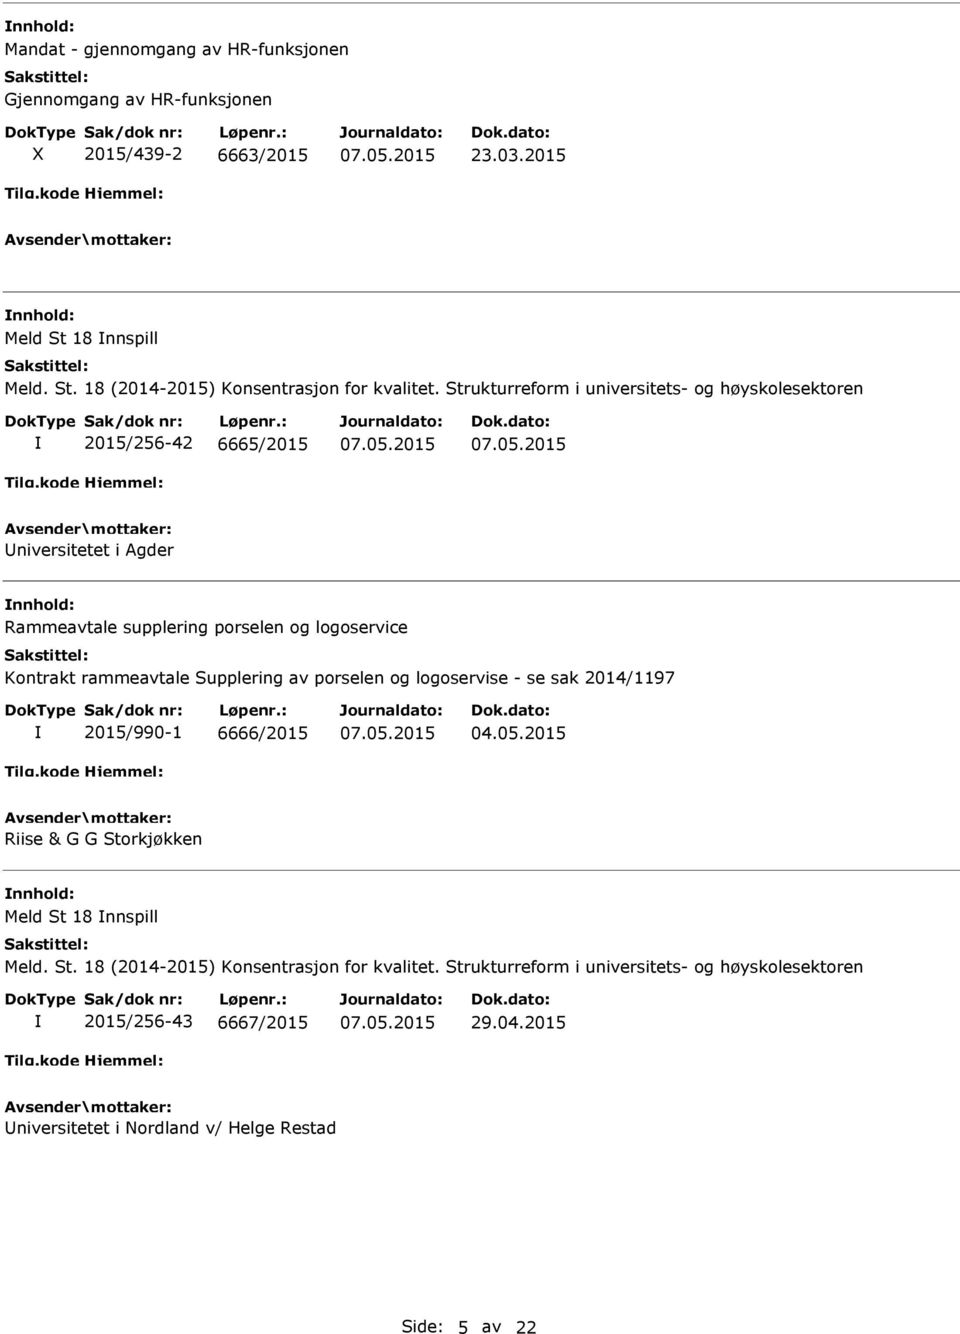 Supplering av porselen og logoservise - se sak 2014/1197 2015/990-1 6666/2015 04.05.2015 Riise & G G Storkjøkken Meld St 18 nnspill Meld. St. 18 (2014-2015) Konsentrasjon for kvalitet.